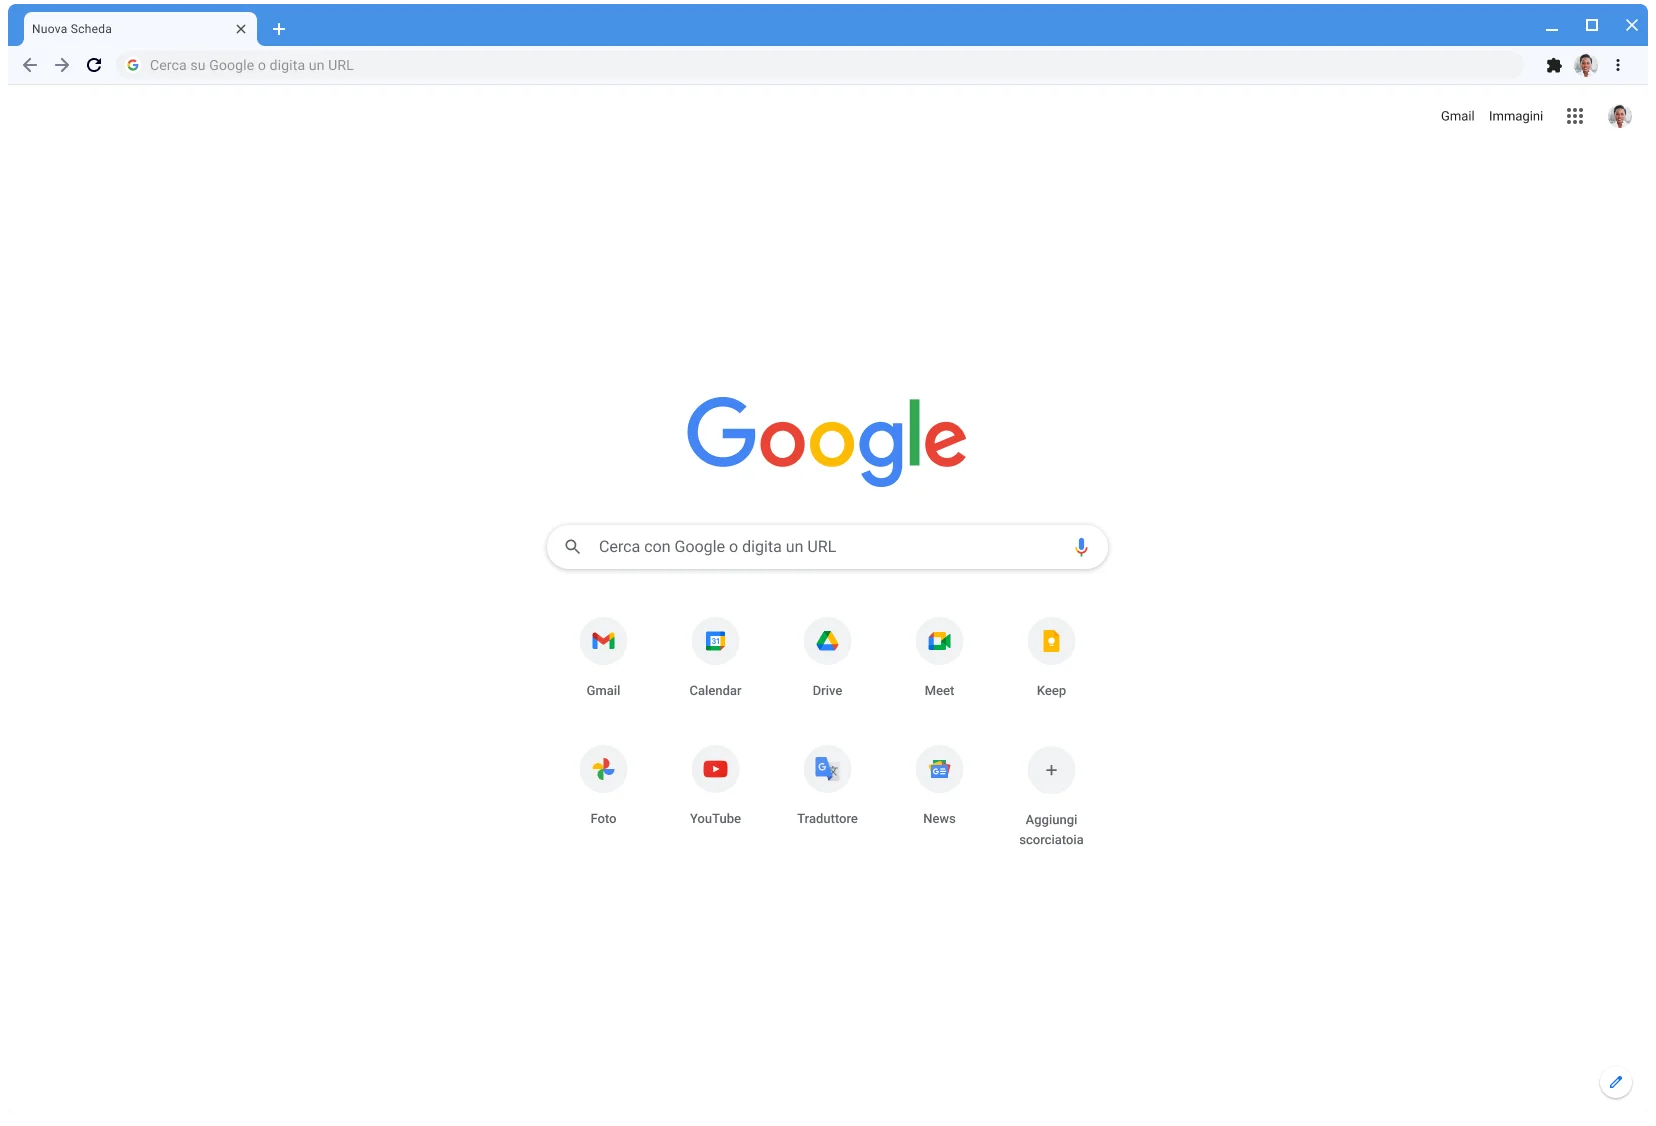 Finestra del browser Chrome che usa il tema classico e con l'indirizzo Google.com visualizzato.